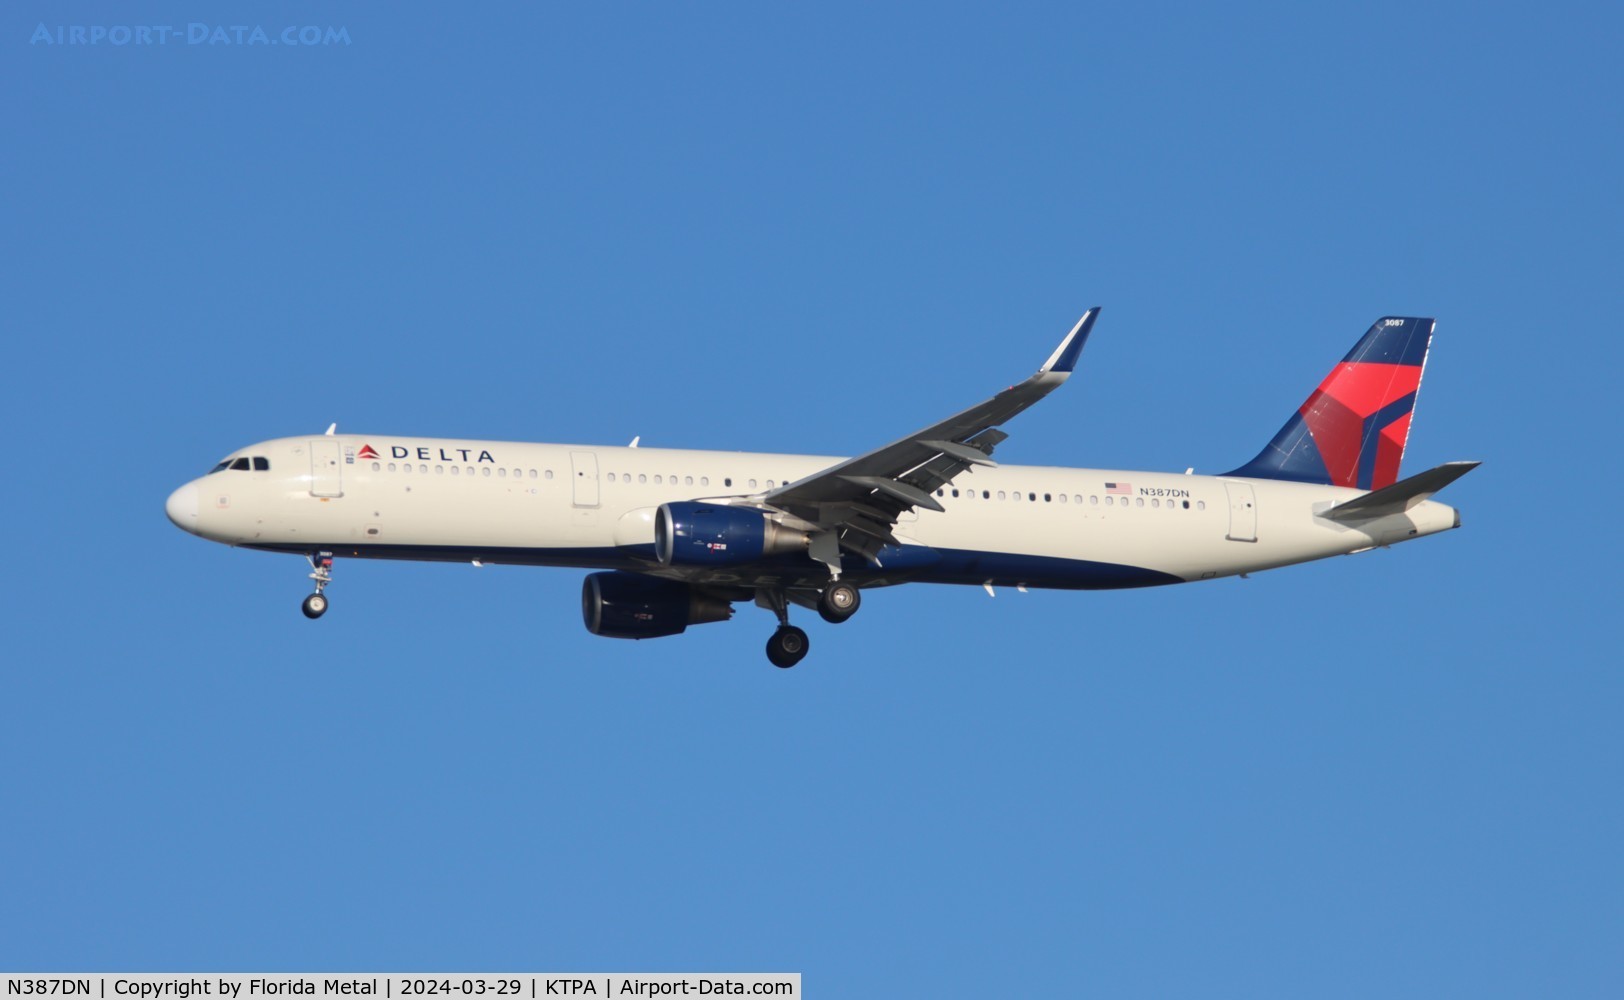 N387DN, 2019 Airbus A321-211 C/N 9025, DAL A321 zx MSP-TPA